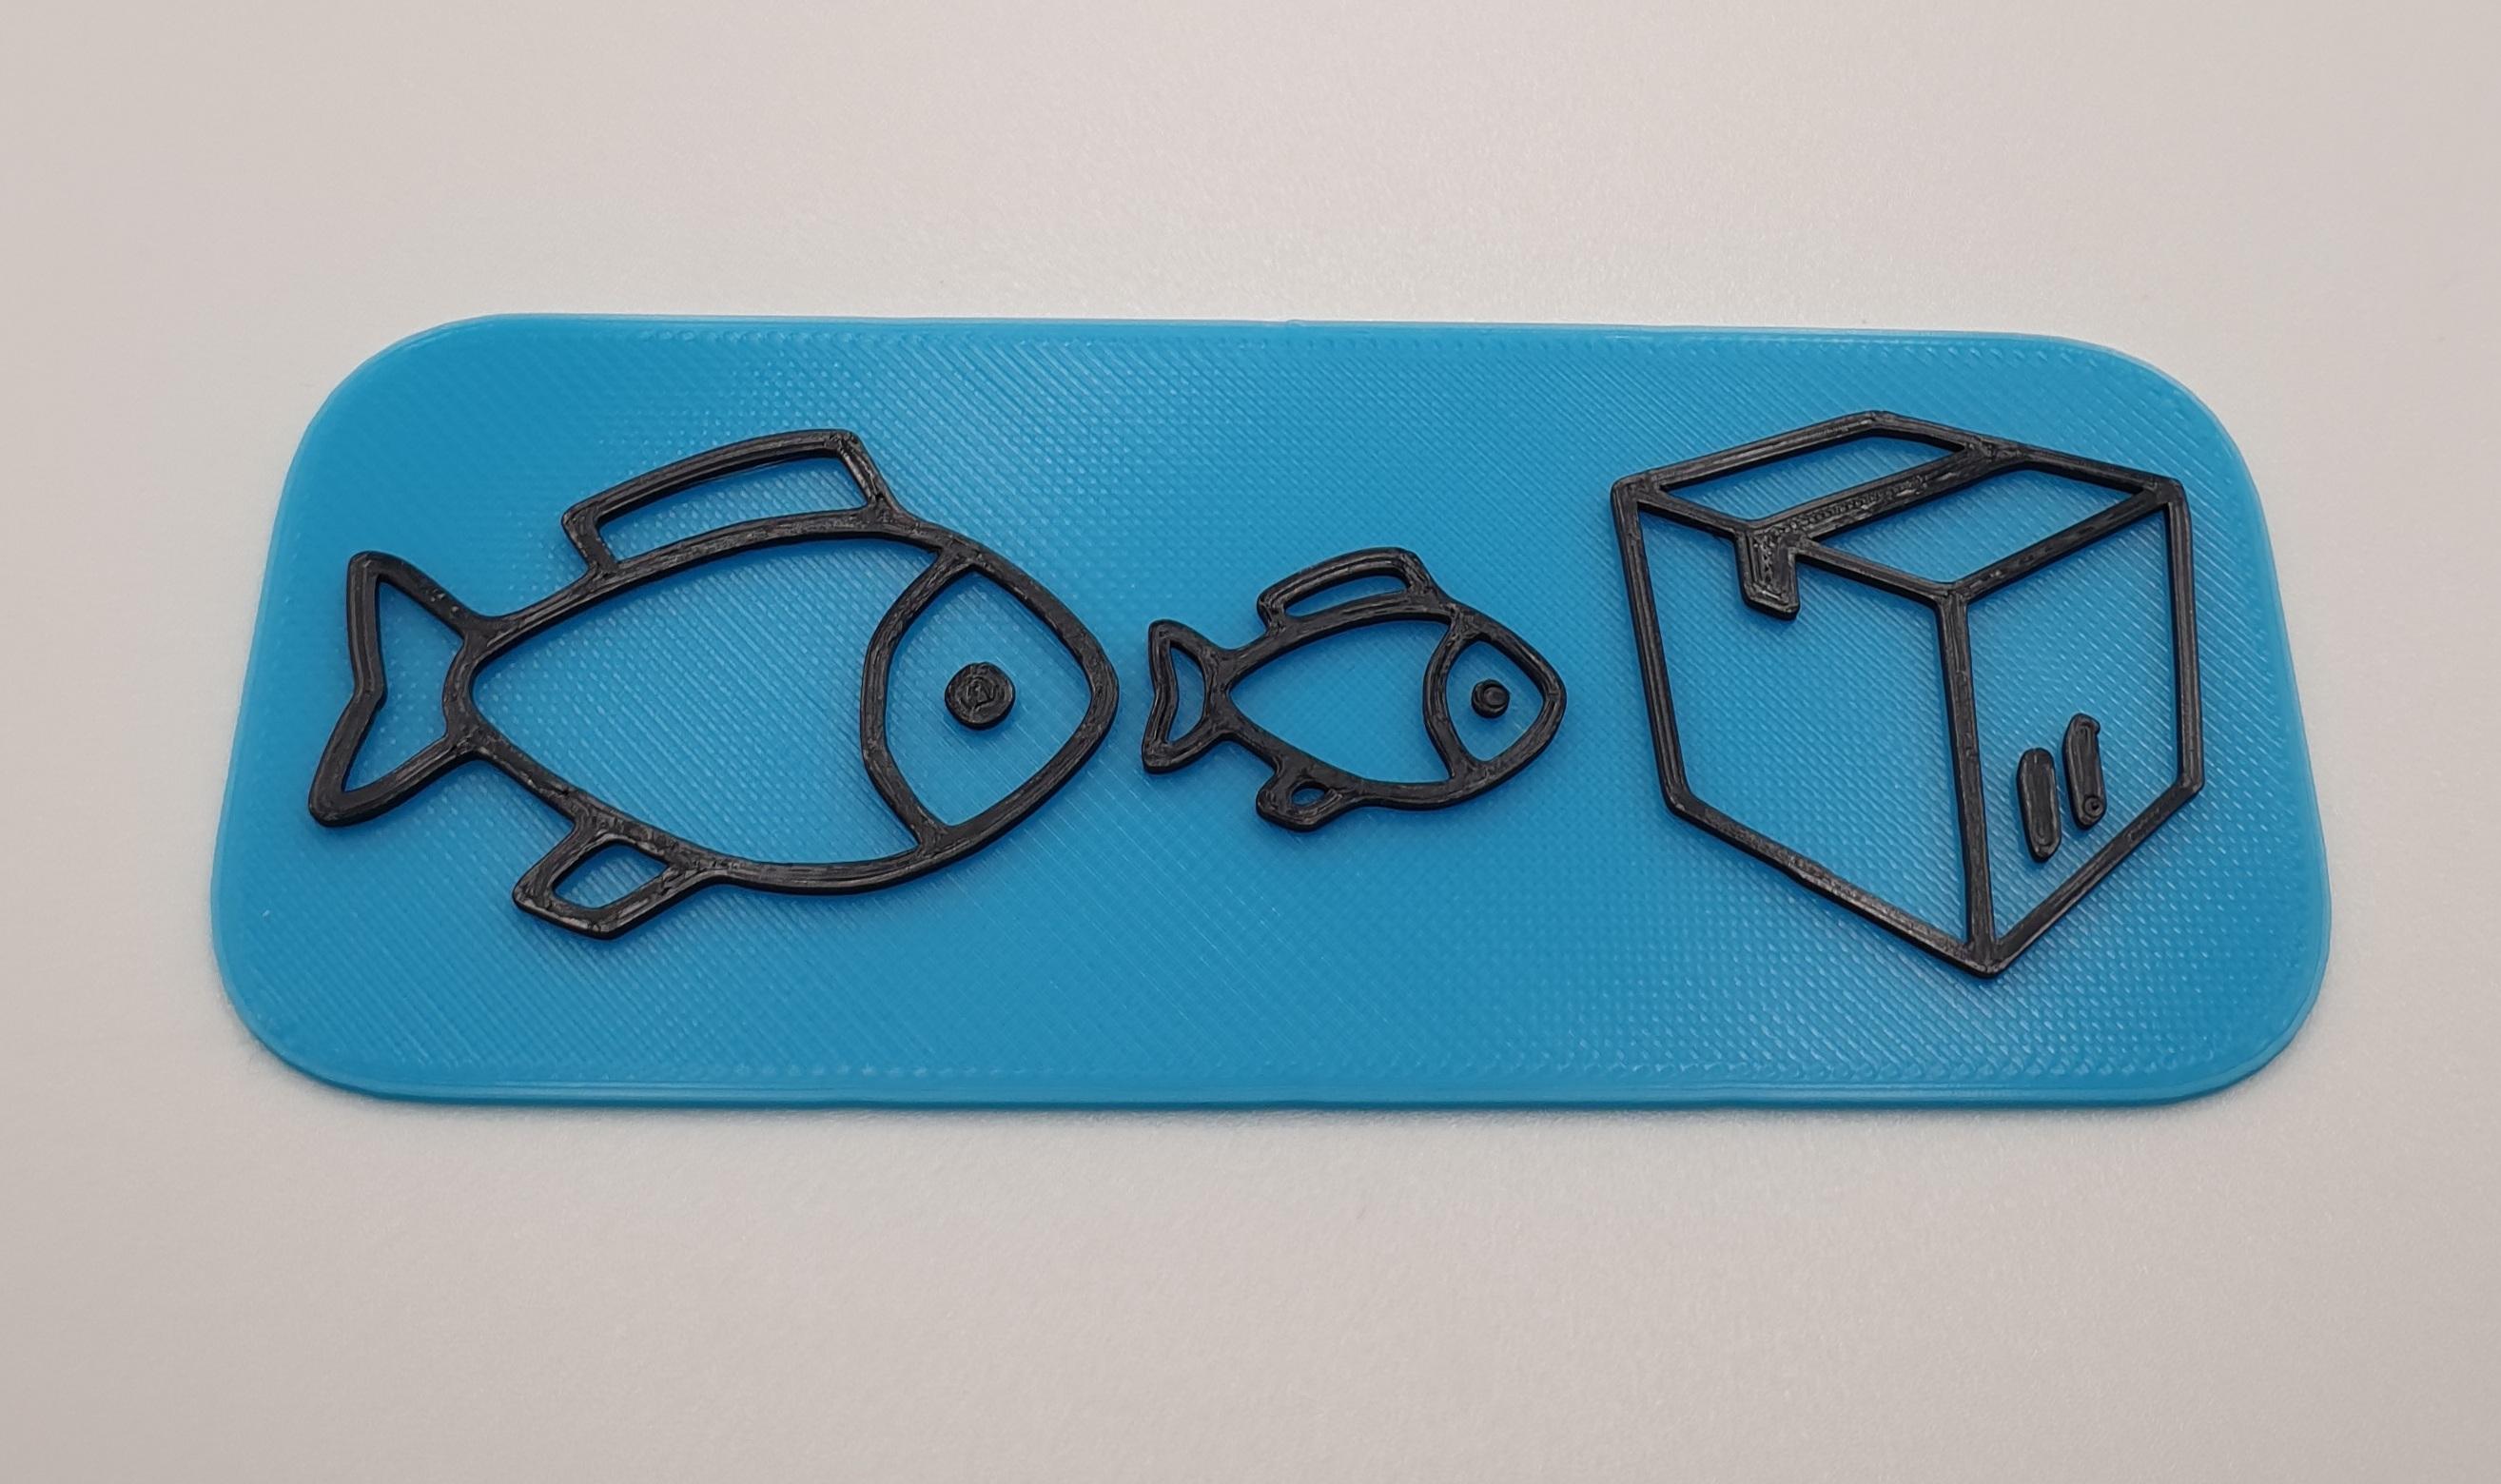 Big fish, little fish, cardboard box 3d model